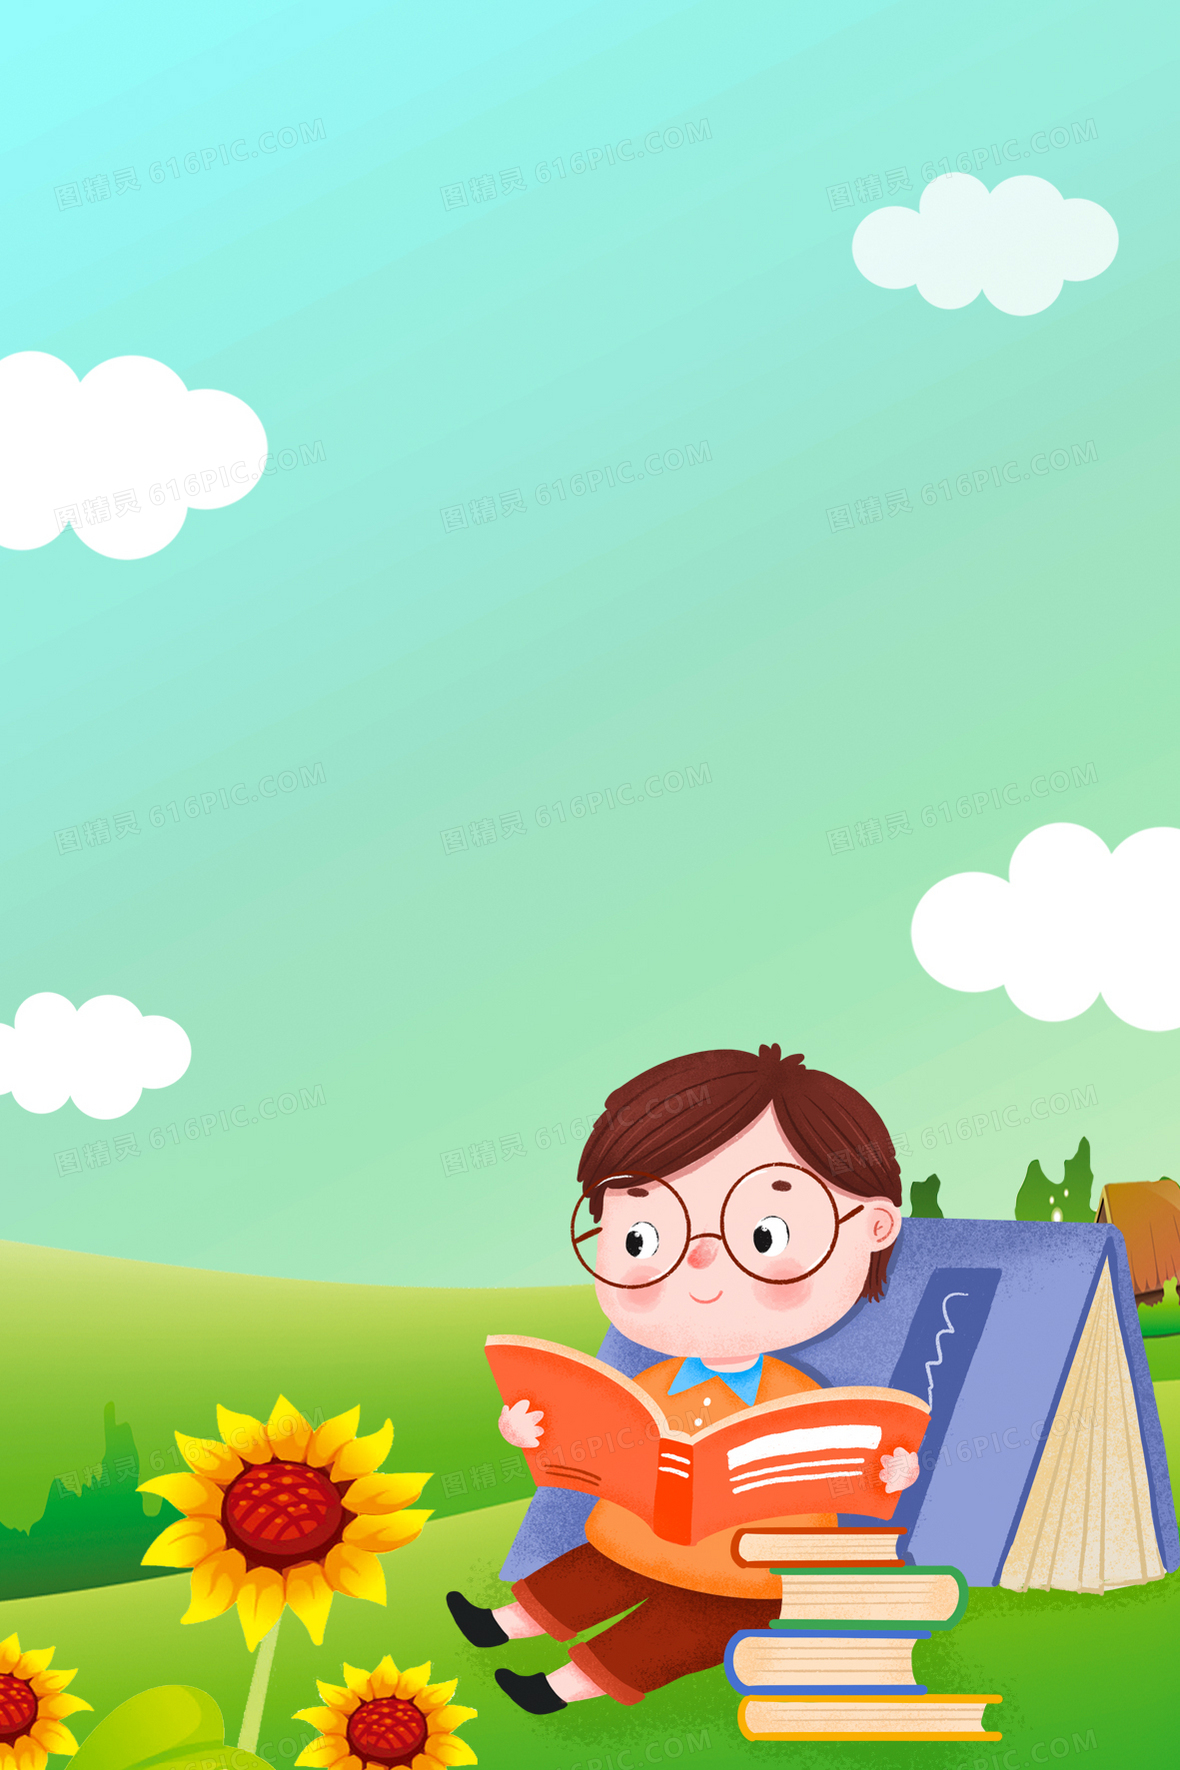 趴着看书的小男孩图片素材免费下载 - 觅知网